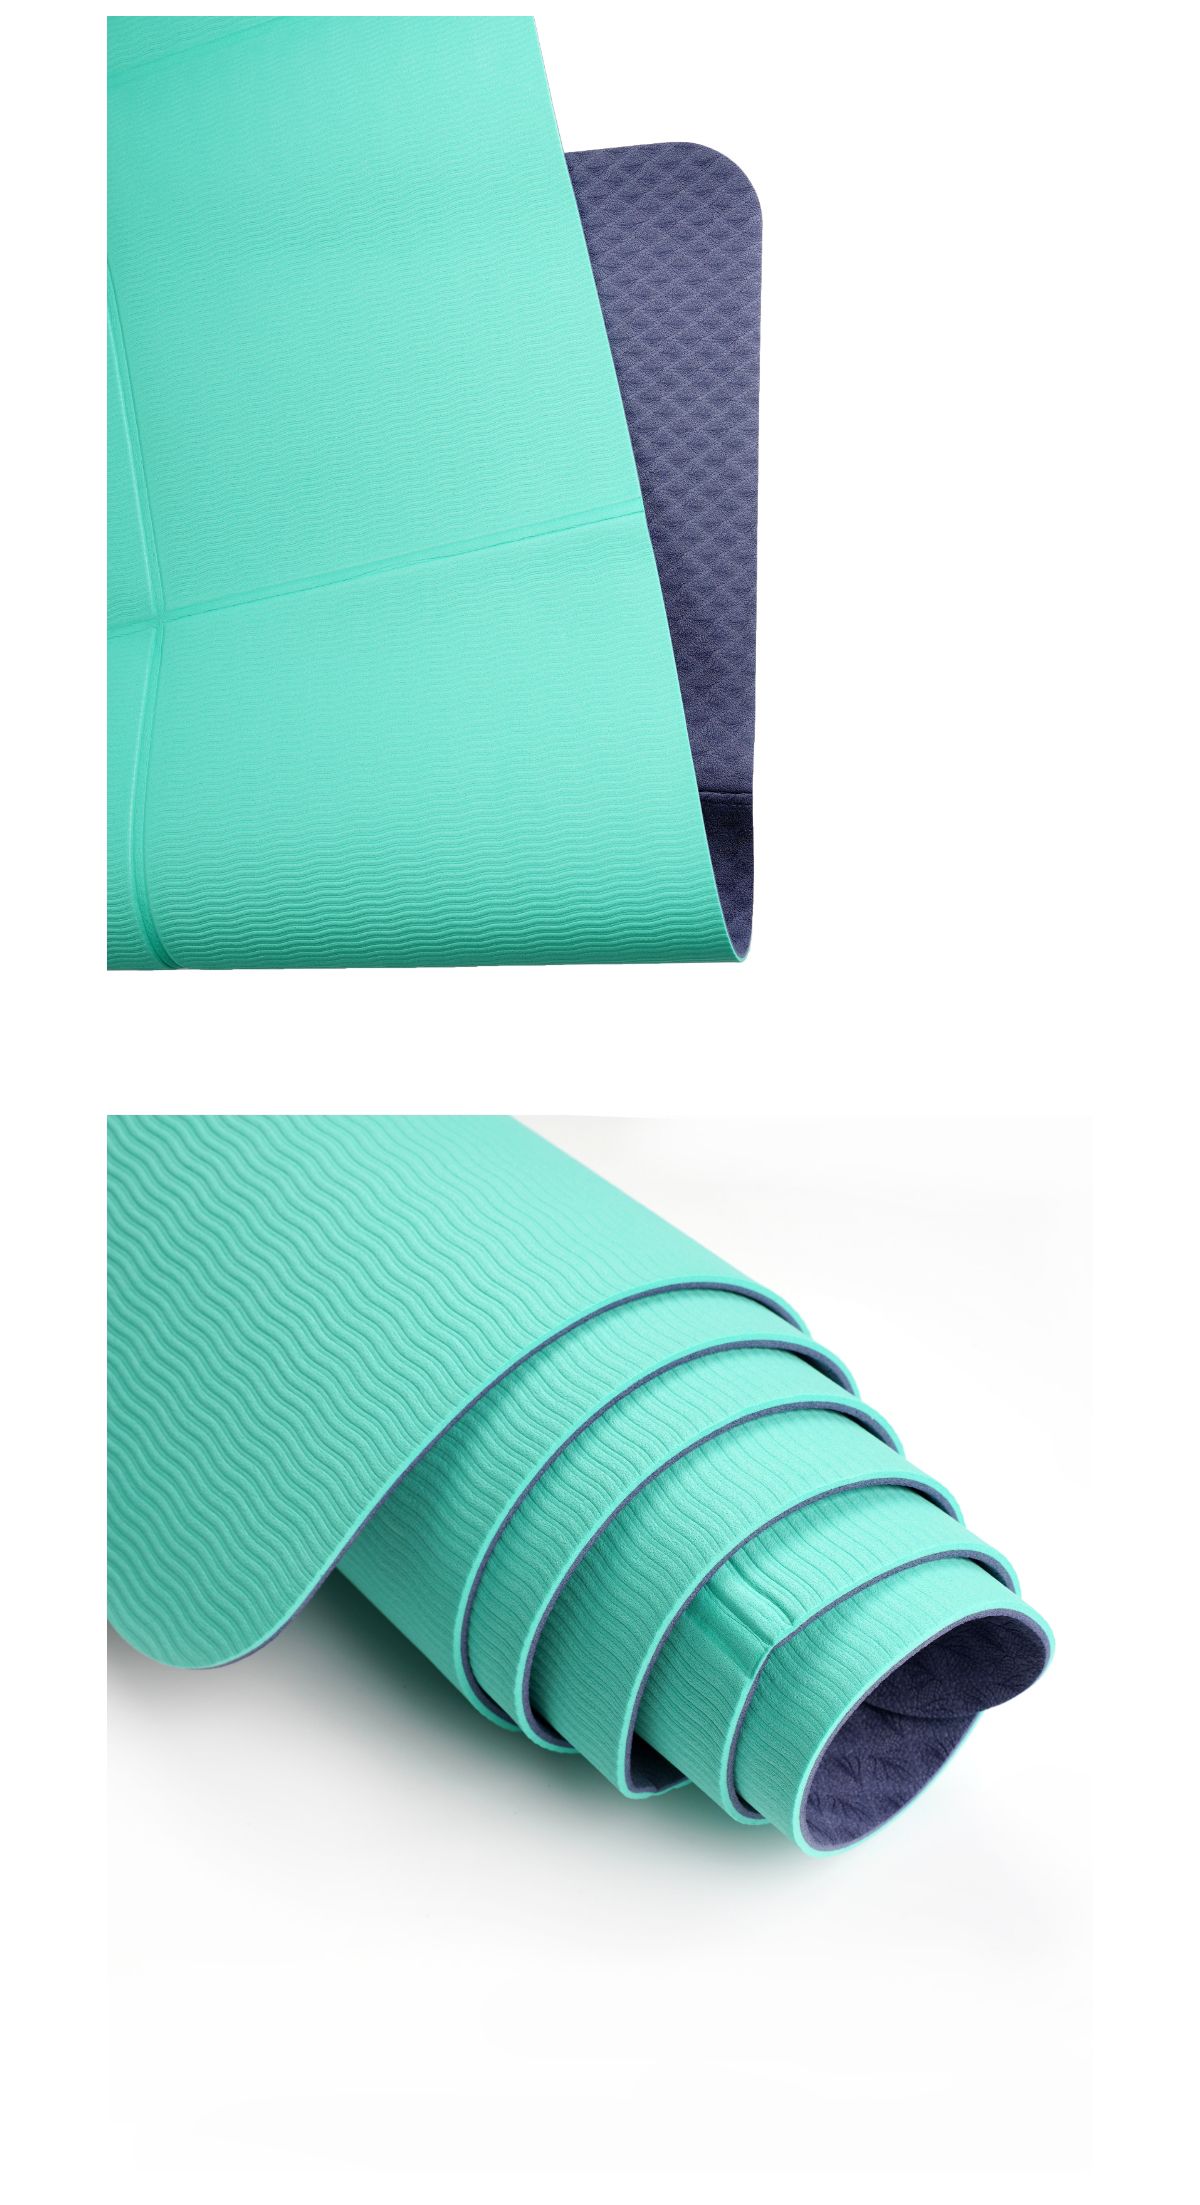 Wholesale Supply Convenient Foldable TPE Yoga Mat